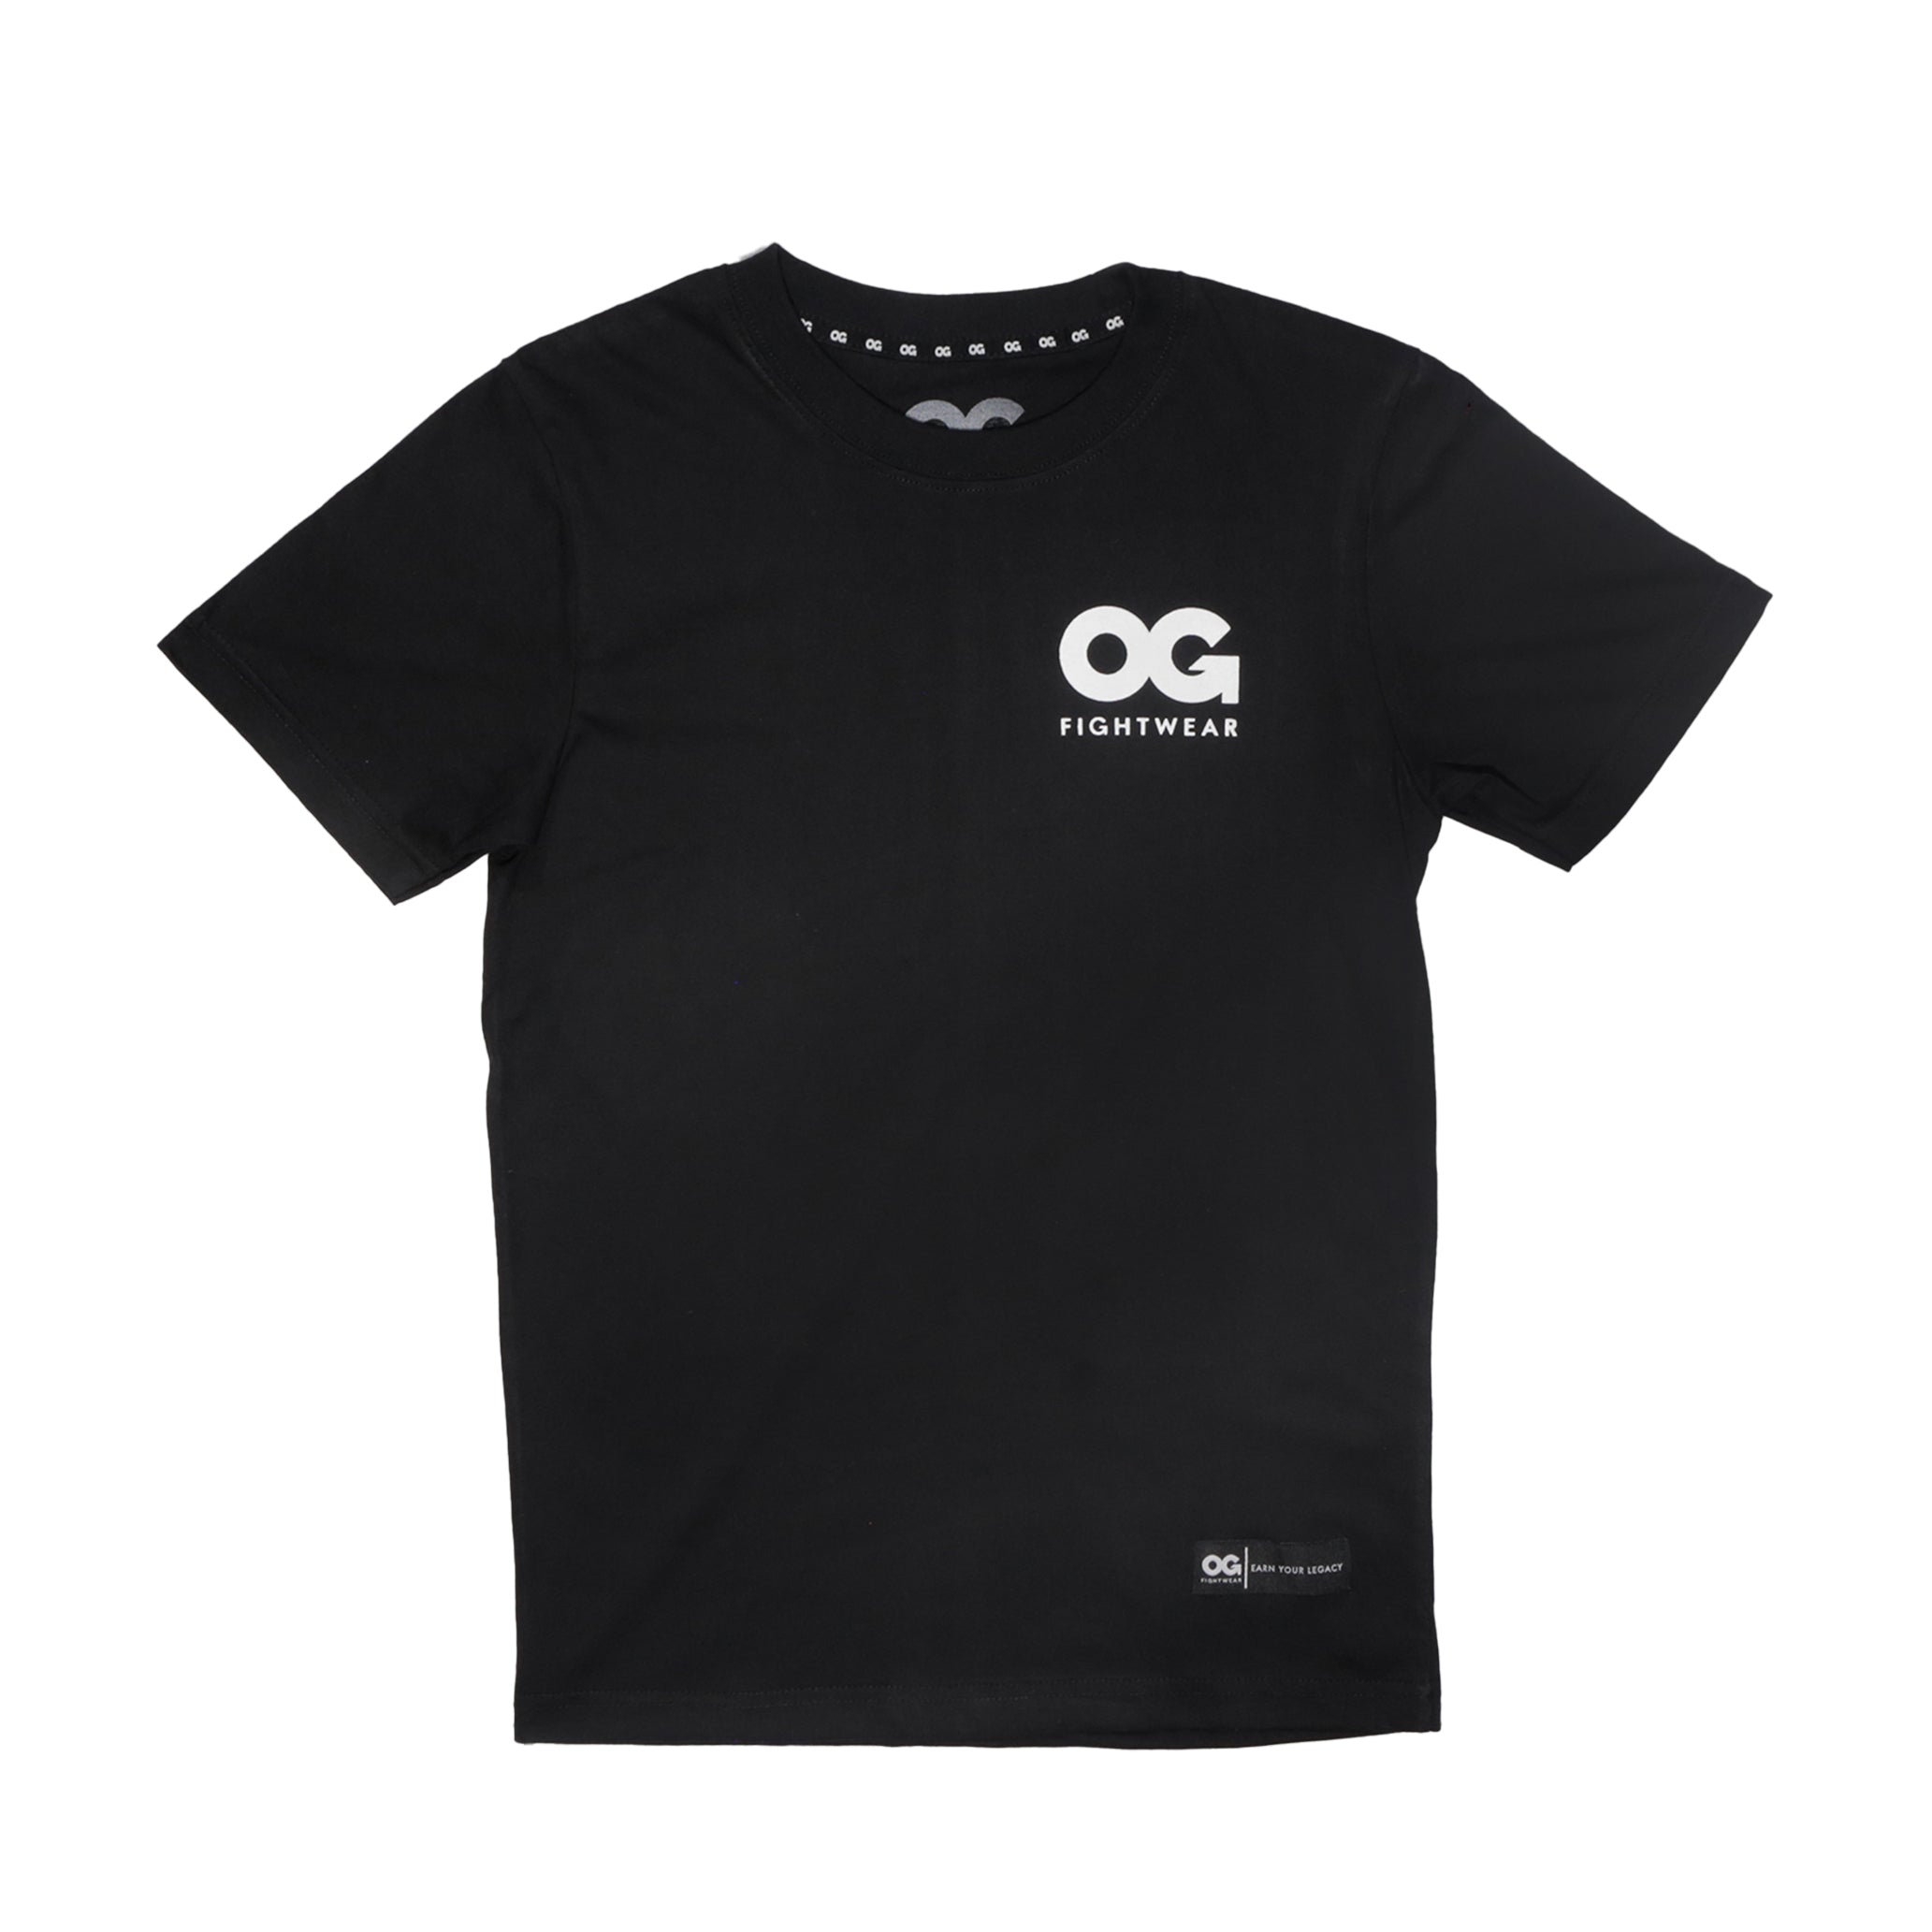 Premium Cotton T-Shirt (Black) – OG Fightwear Global